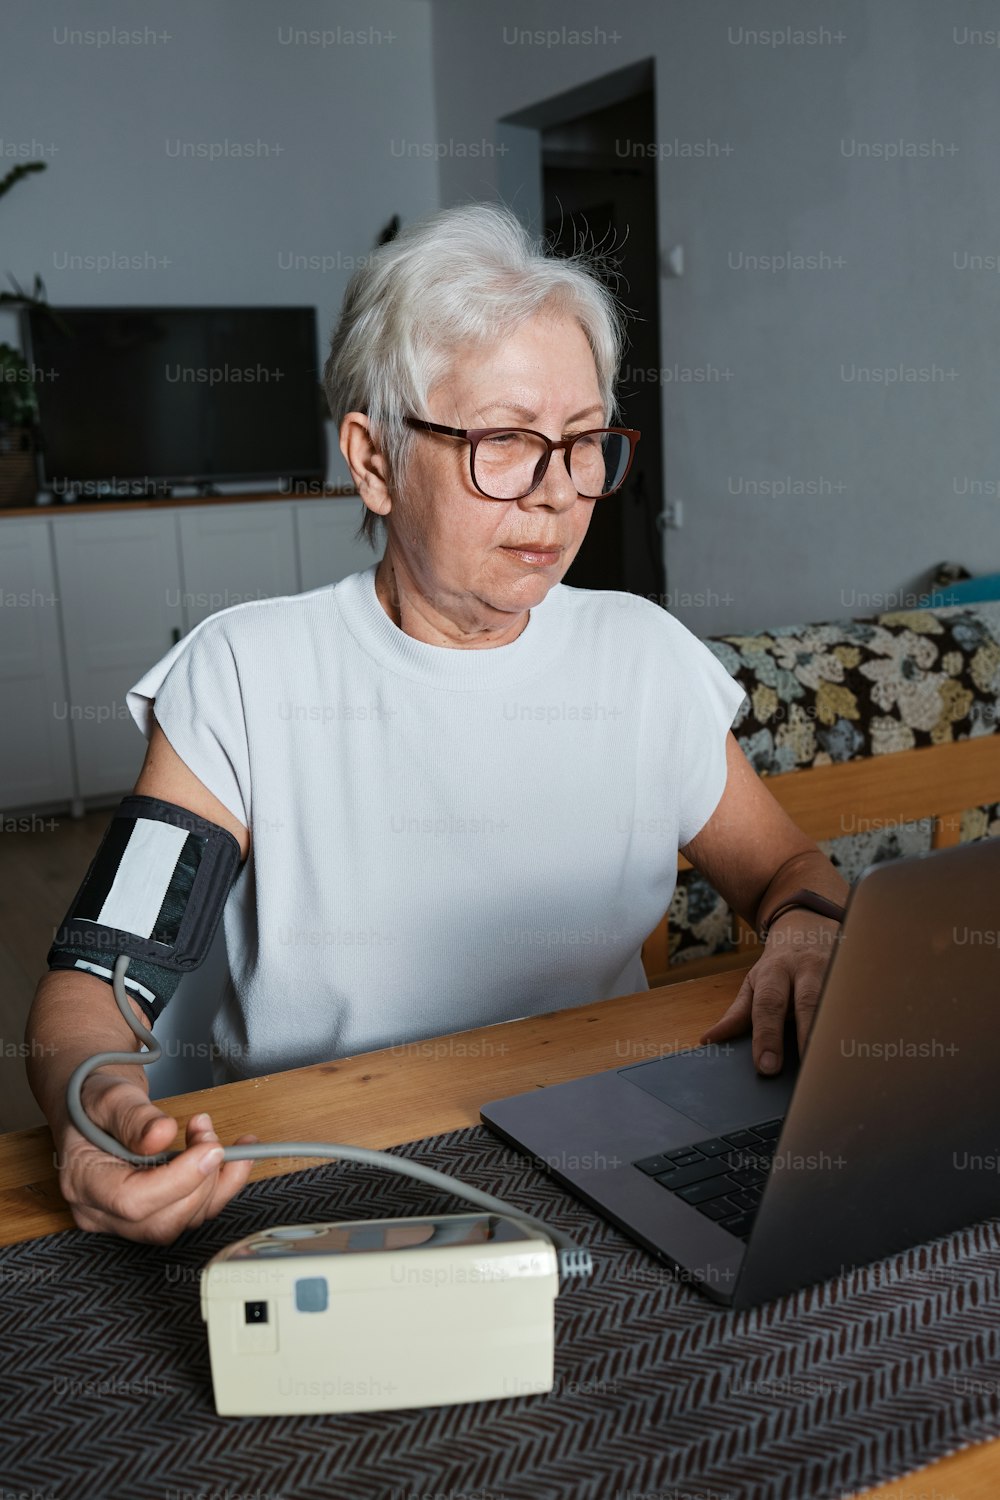 팔에 깁스를 한 여성이 노트북을 사용하고 있다